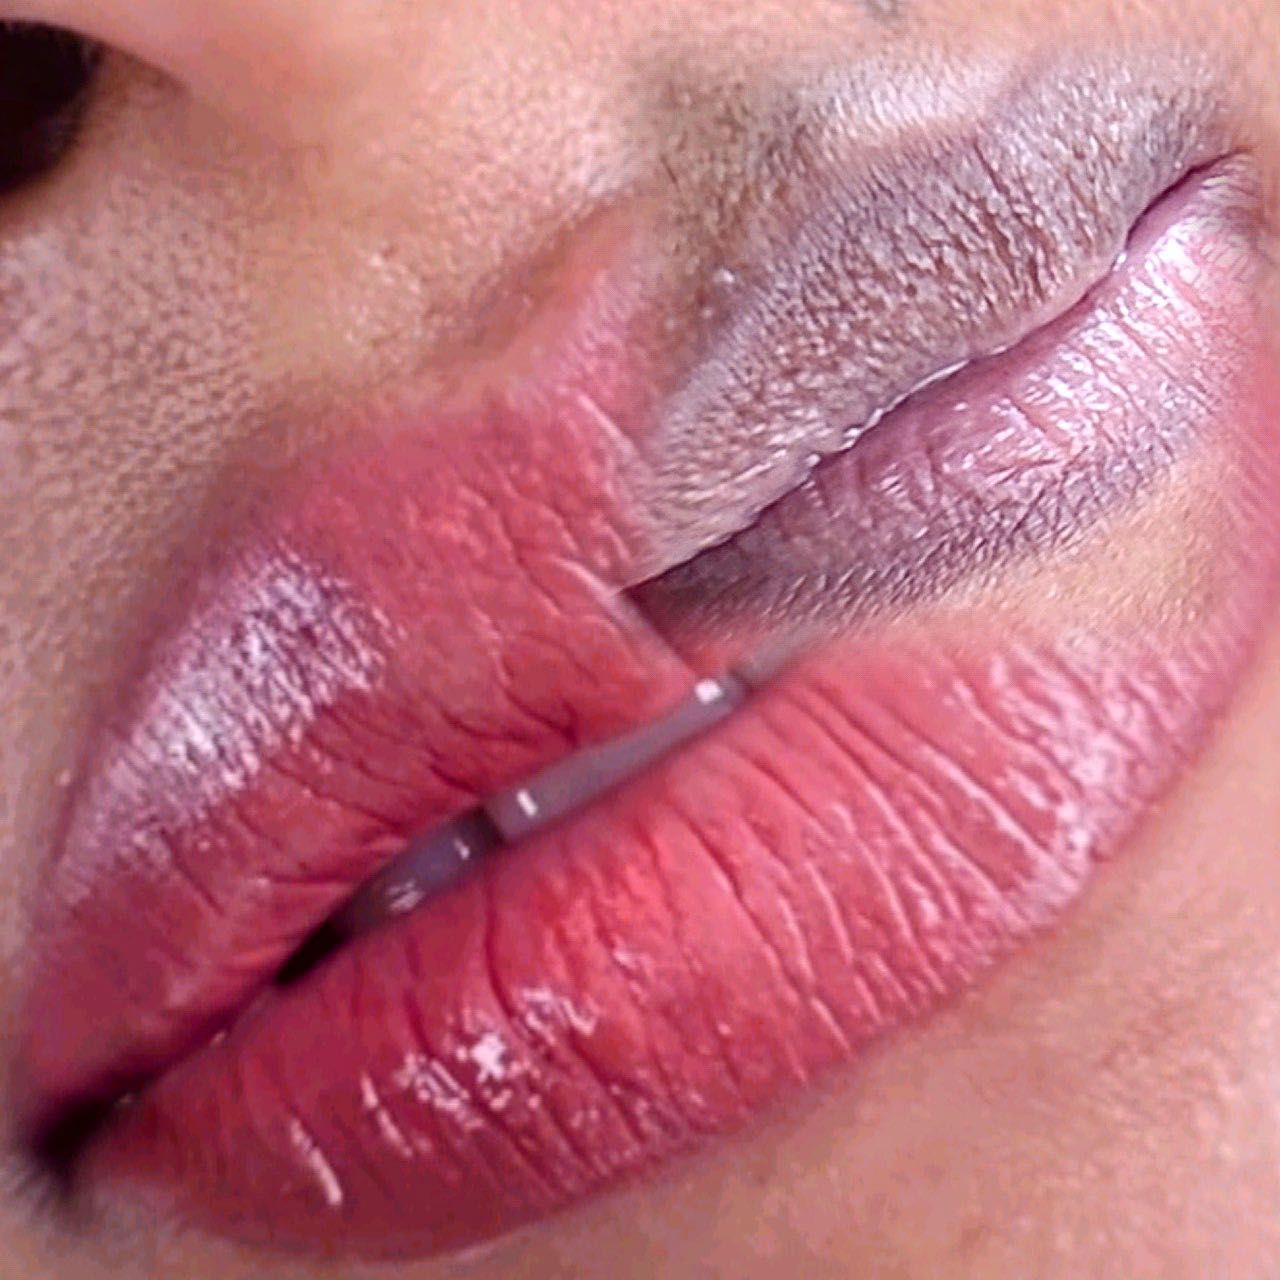 Lips Tattoo Blush & AQUARELLA Lips / Cherry Lips portfolio